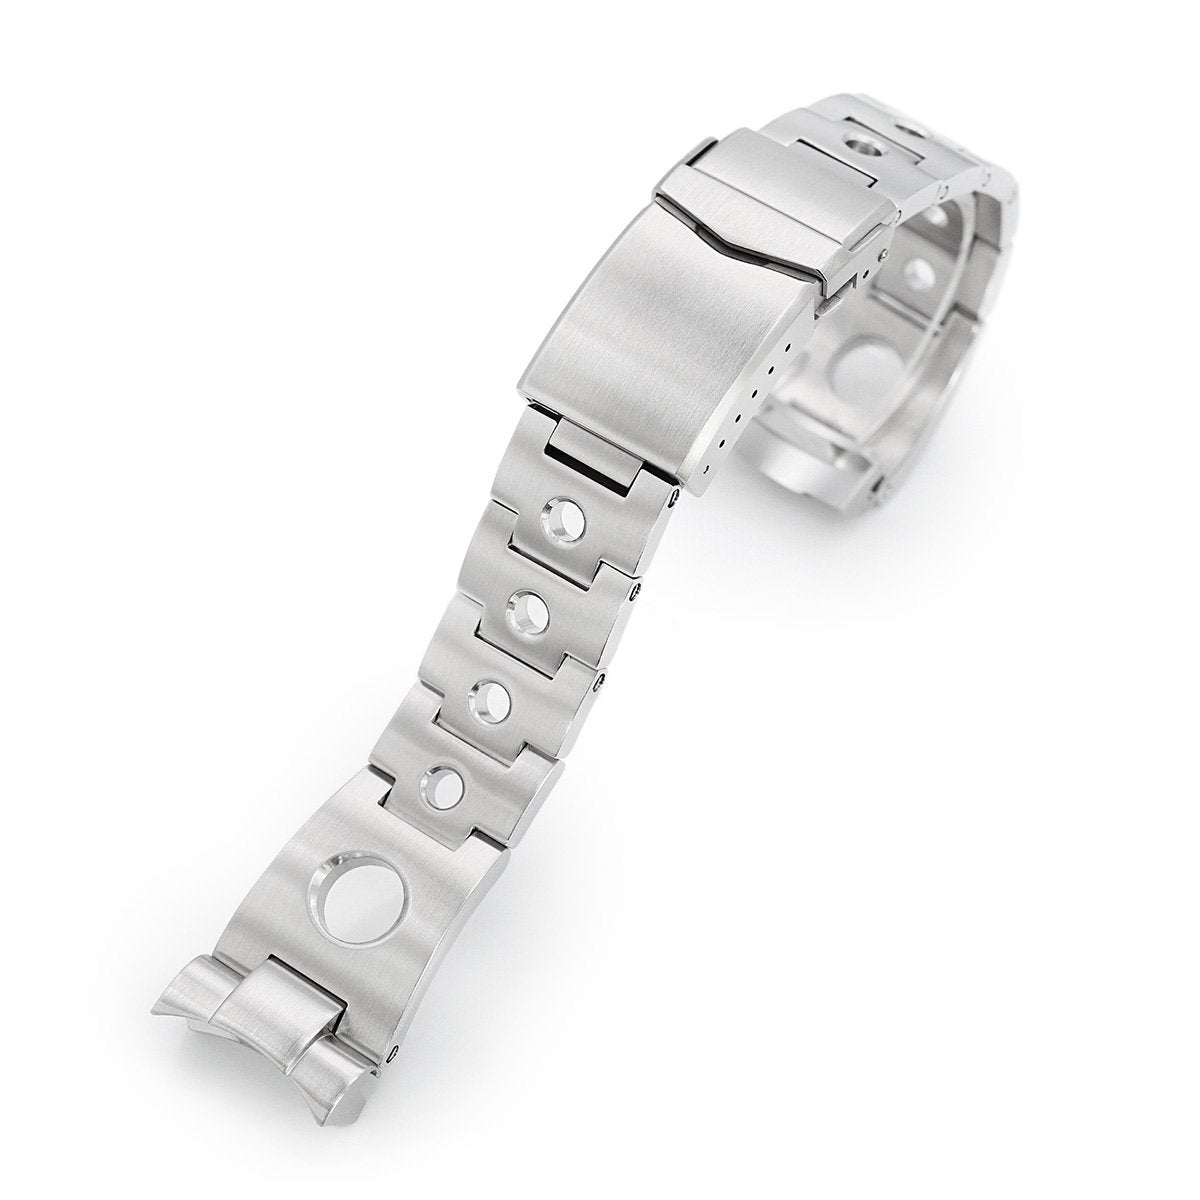 22mm steel watch strap